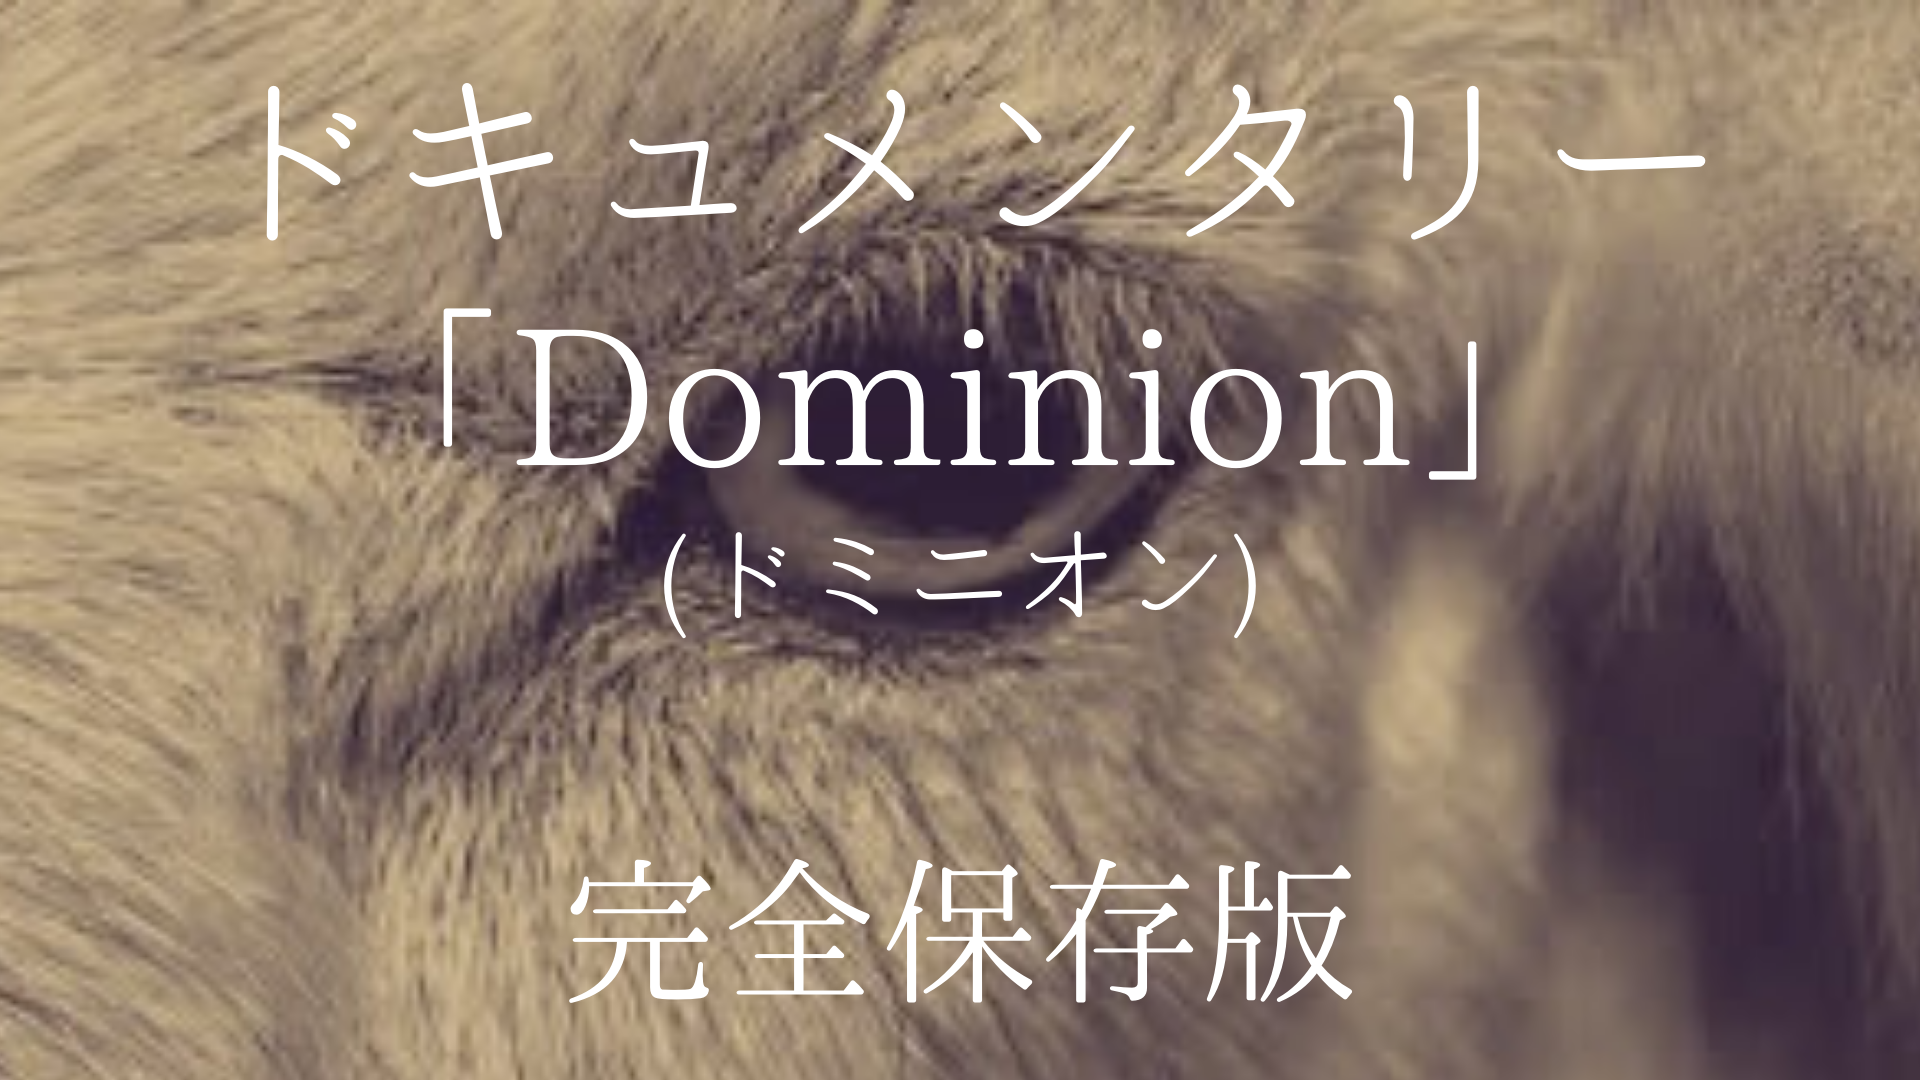 ドキュメンタリー Dominion ドミニオン 全文書き出し Masa Mini Life